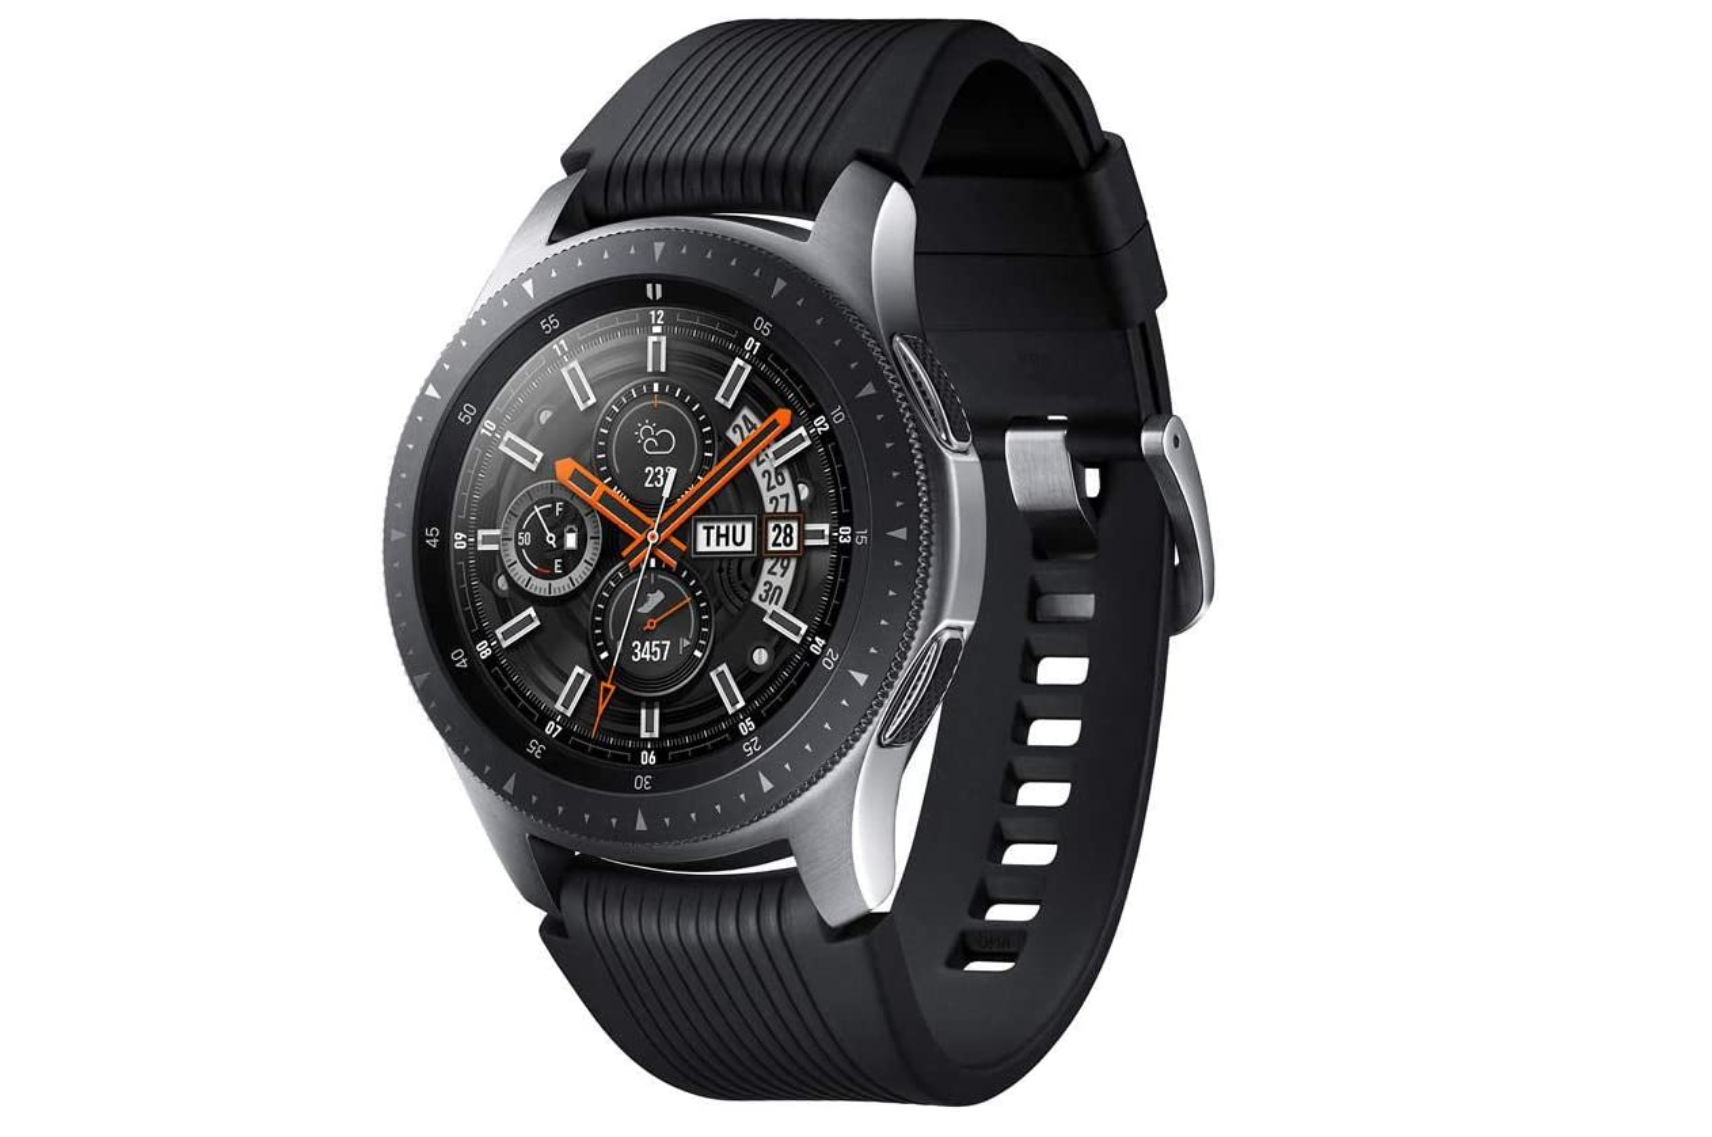 【Gear S】至高のベゼル操作 Samsung Galaxy Watch